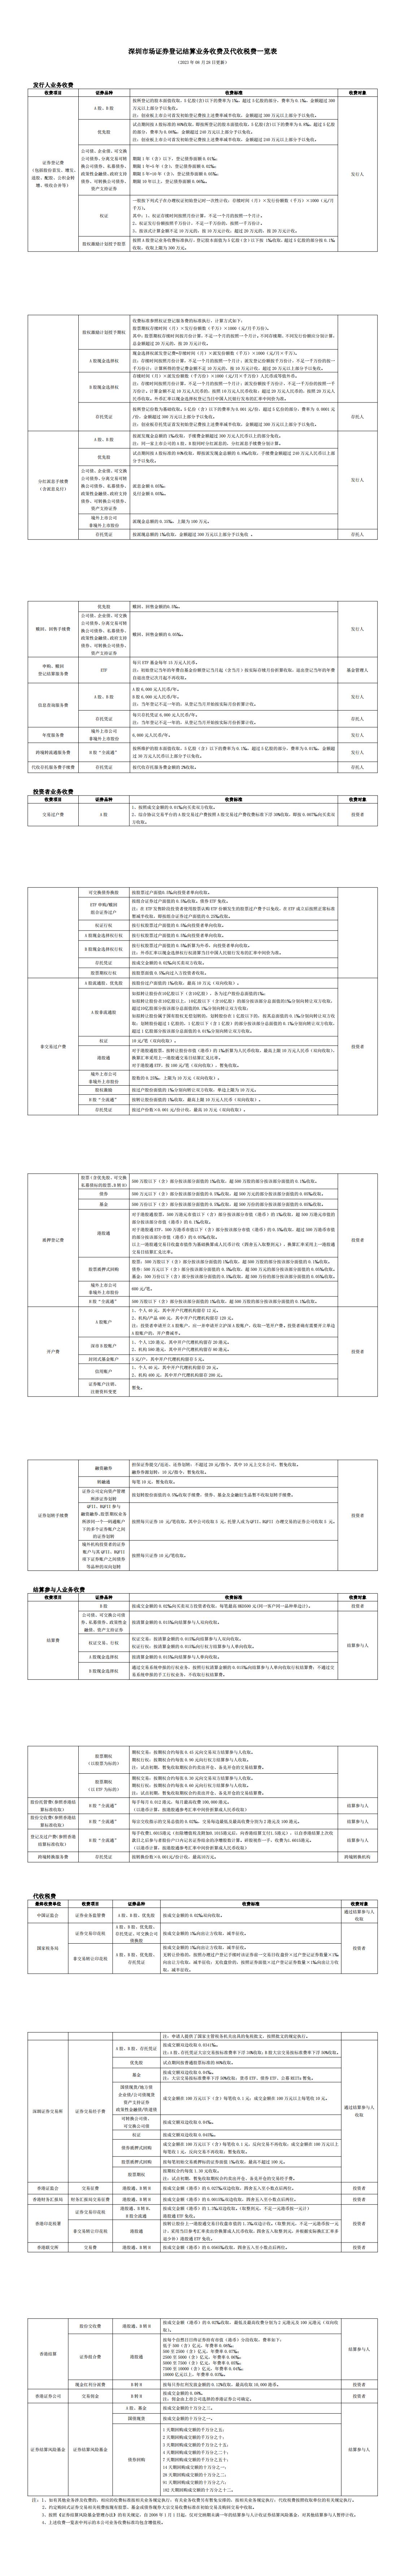 深圳市场证券登记结算业务收费及代收税费一览表(1)_00.jpg